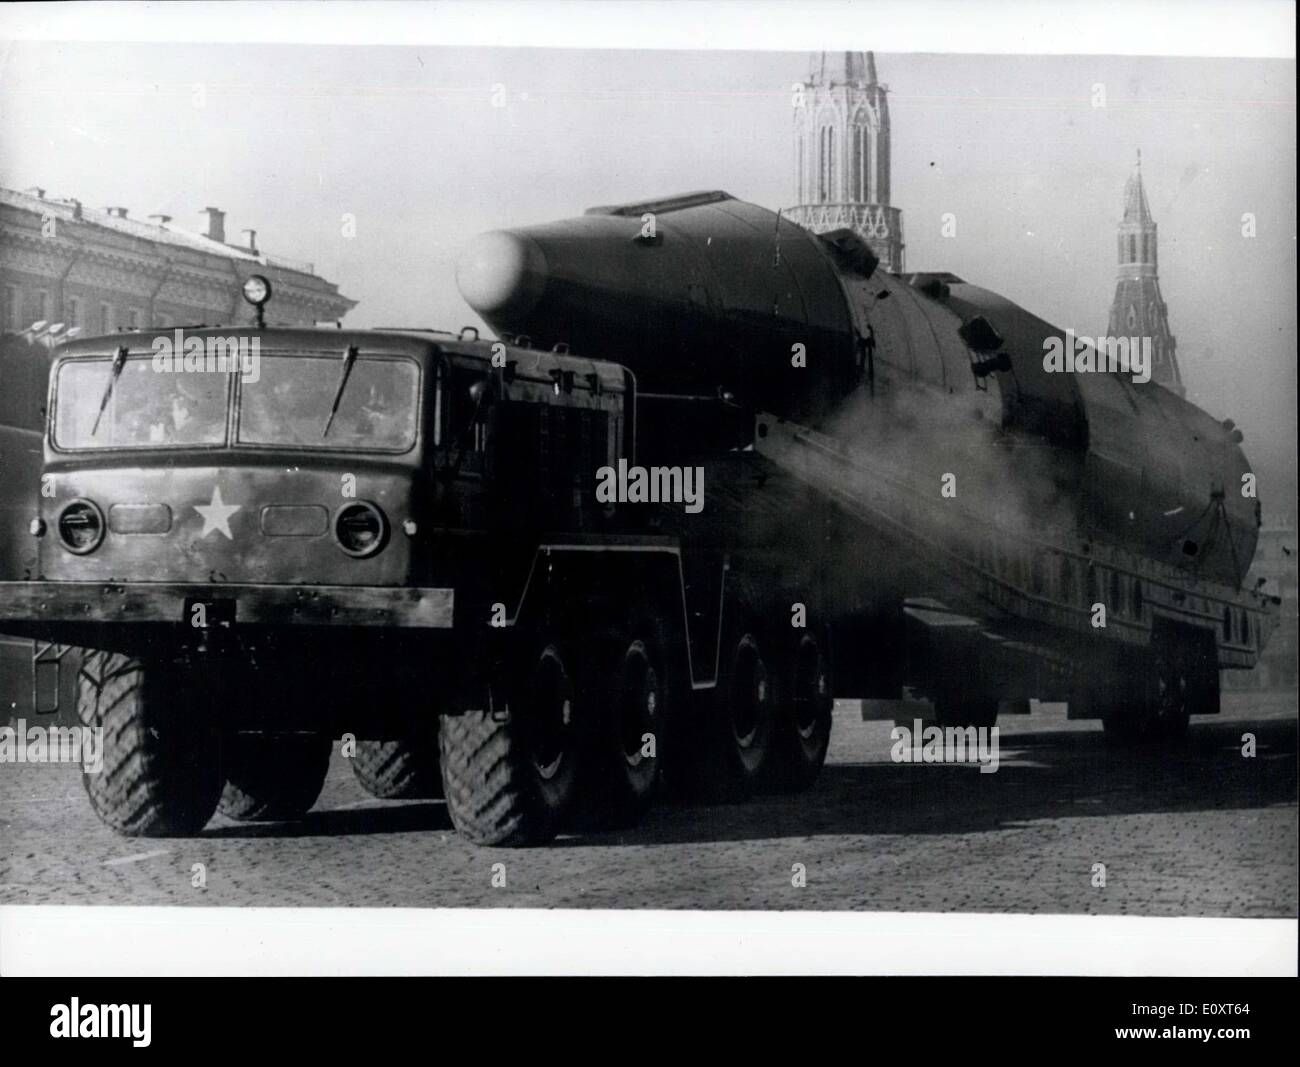 Le 10 novembre 1967 - 50e anniversaire de la révolution bolchevique : photo montre l'une des fusées géantes qui ont été indiqués à la place Rouge, Moscou, pendant le défilé et les célébrations marquant le 50e anniversaire de la révolution bolchevique. Banque D'Images